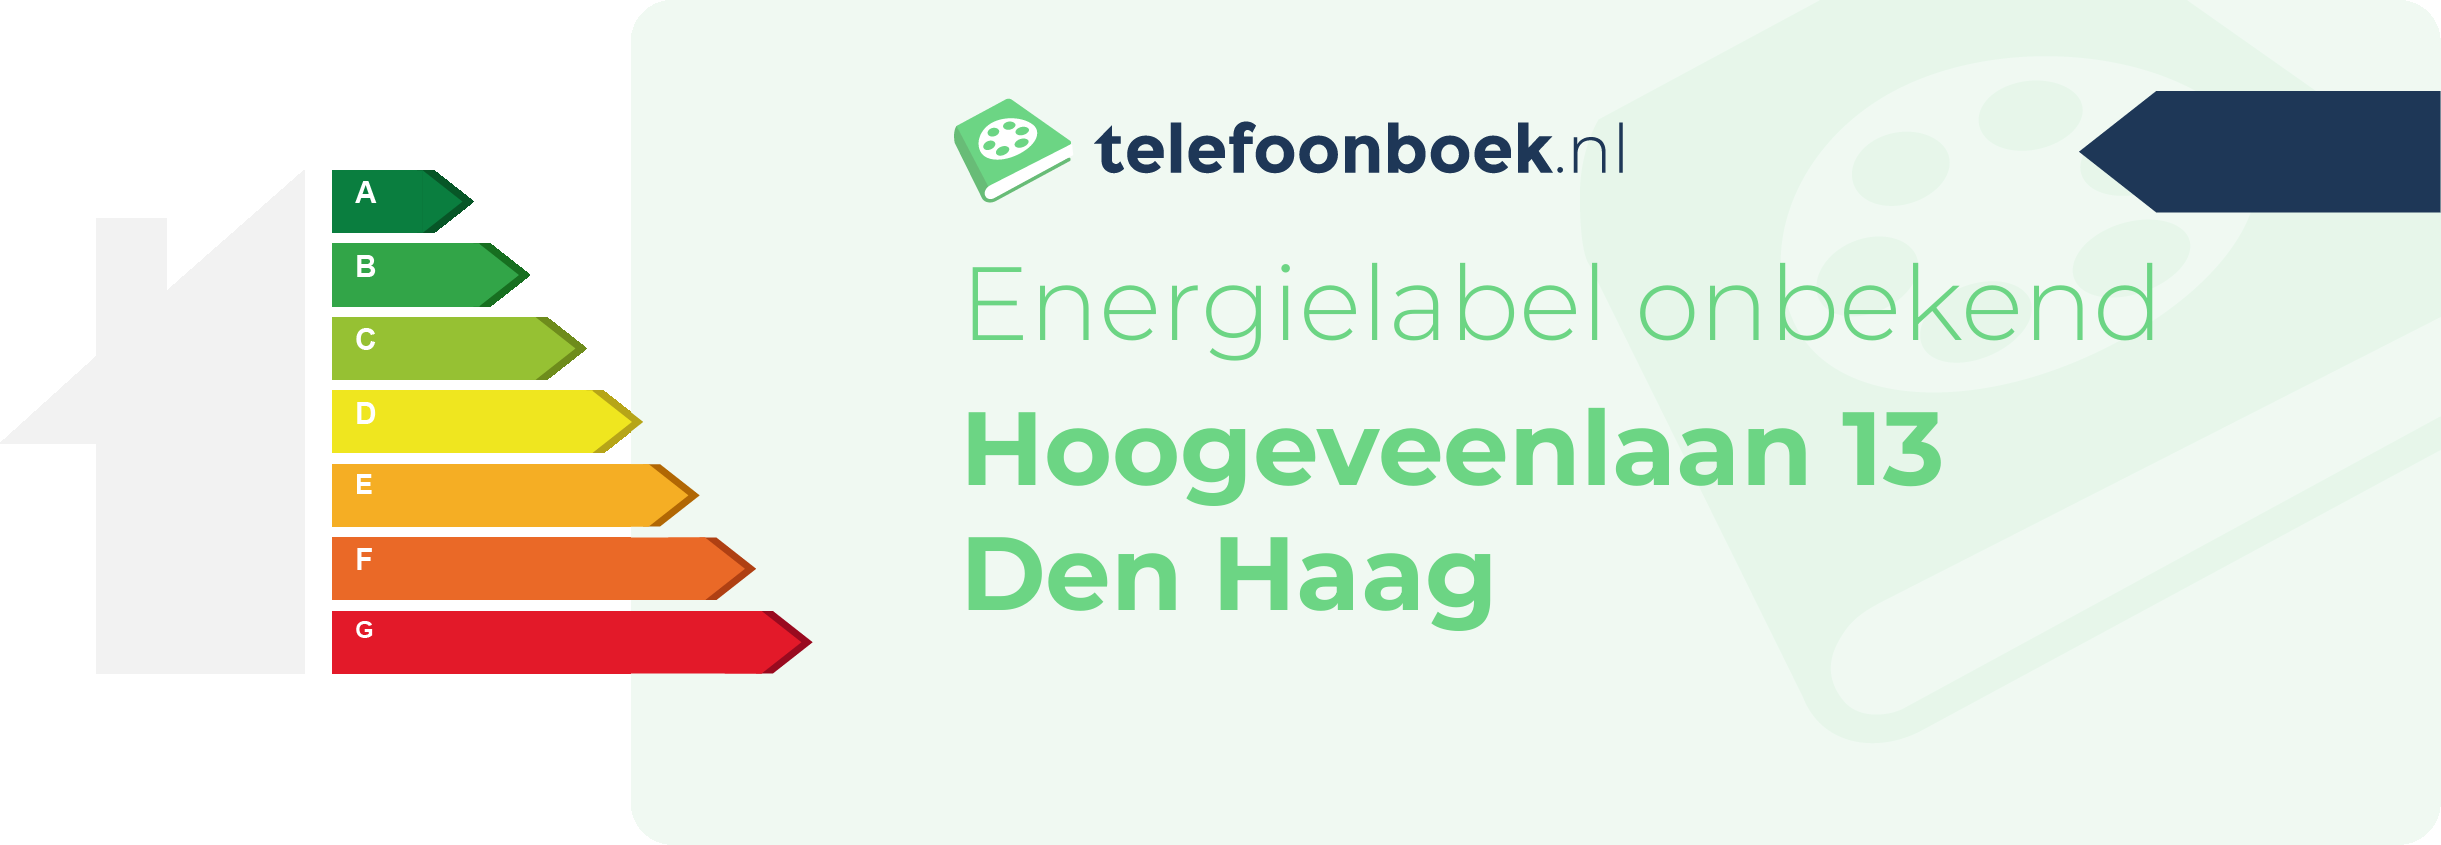 Energielabel Hoogeveenlaan 13 Den Haag